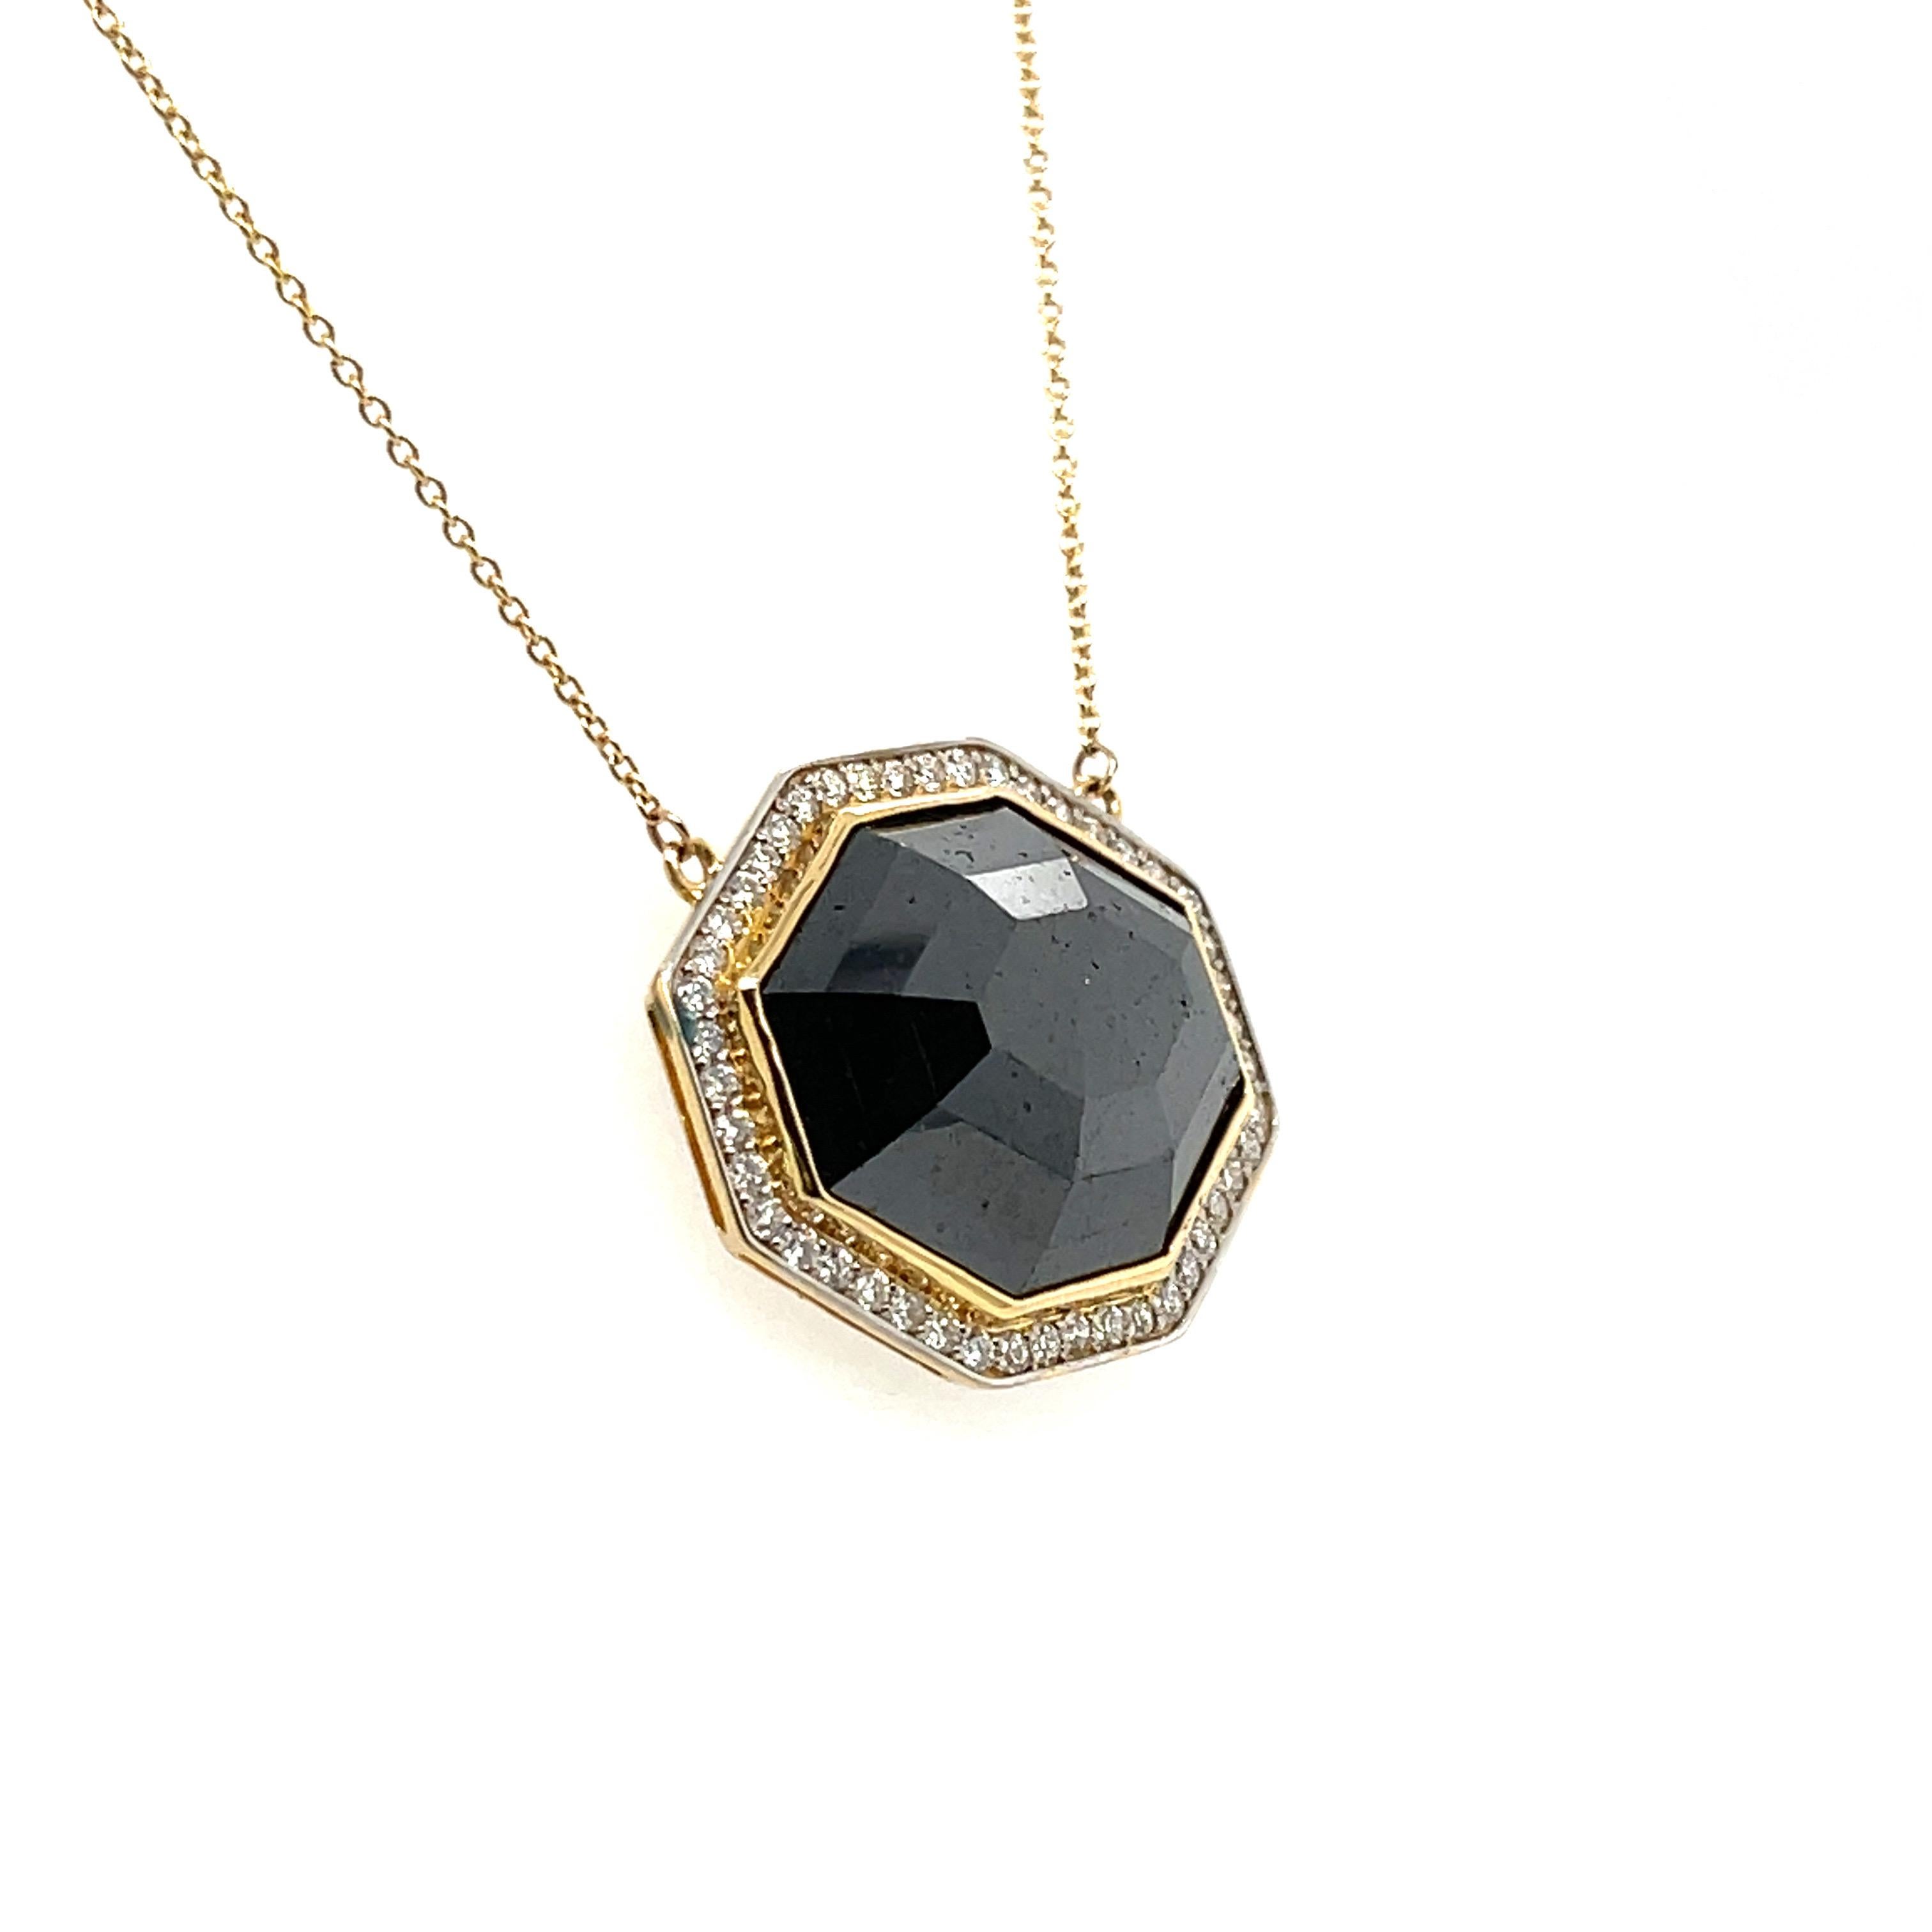 Diamant octogonal noir, mettant en valeur des diamants blancs naturels dans un pendentif et un collier magnifiquement travaillés, complétés par un superbe design à la finition polie.

Une dame - pendentif octogonal en or jaune 18ct sur un lien ovale